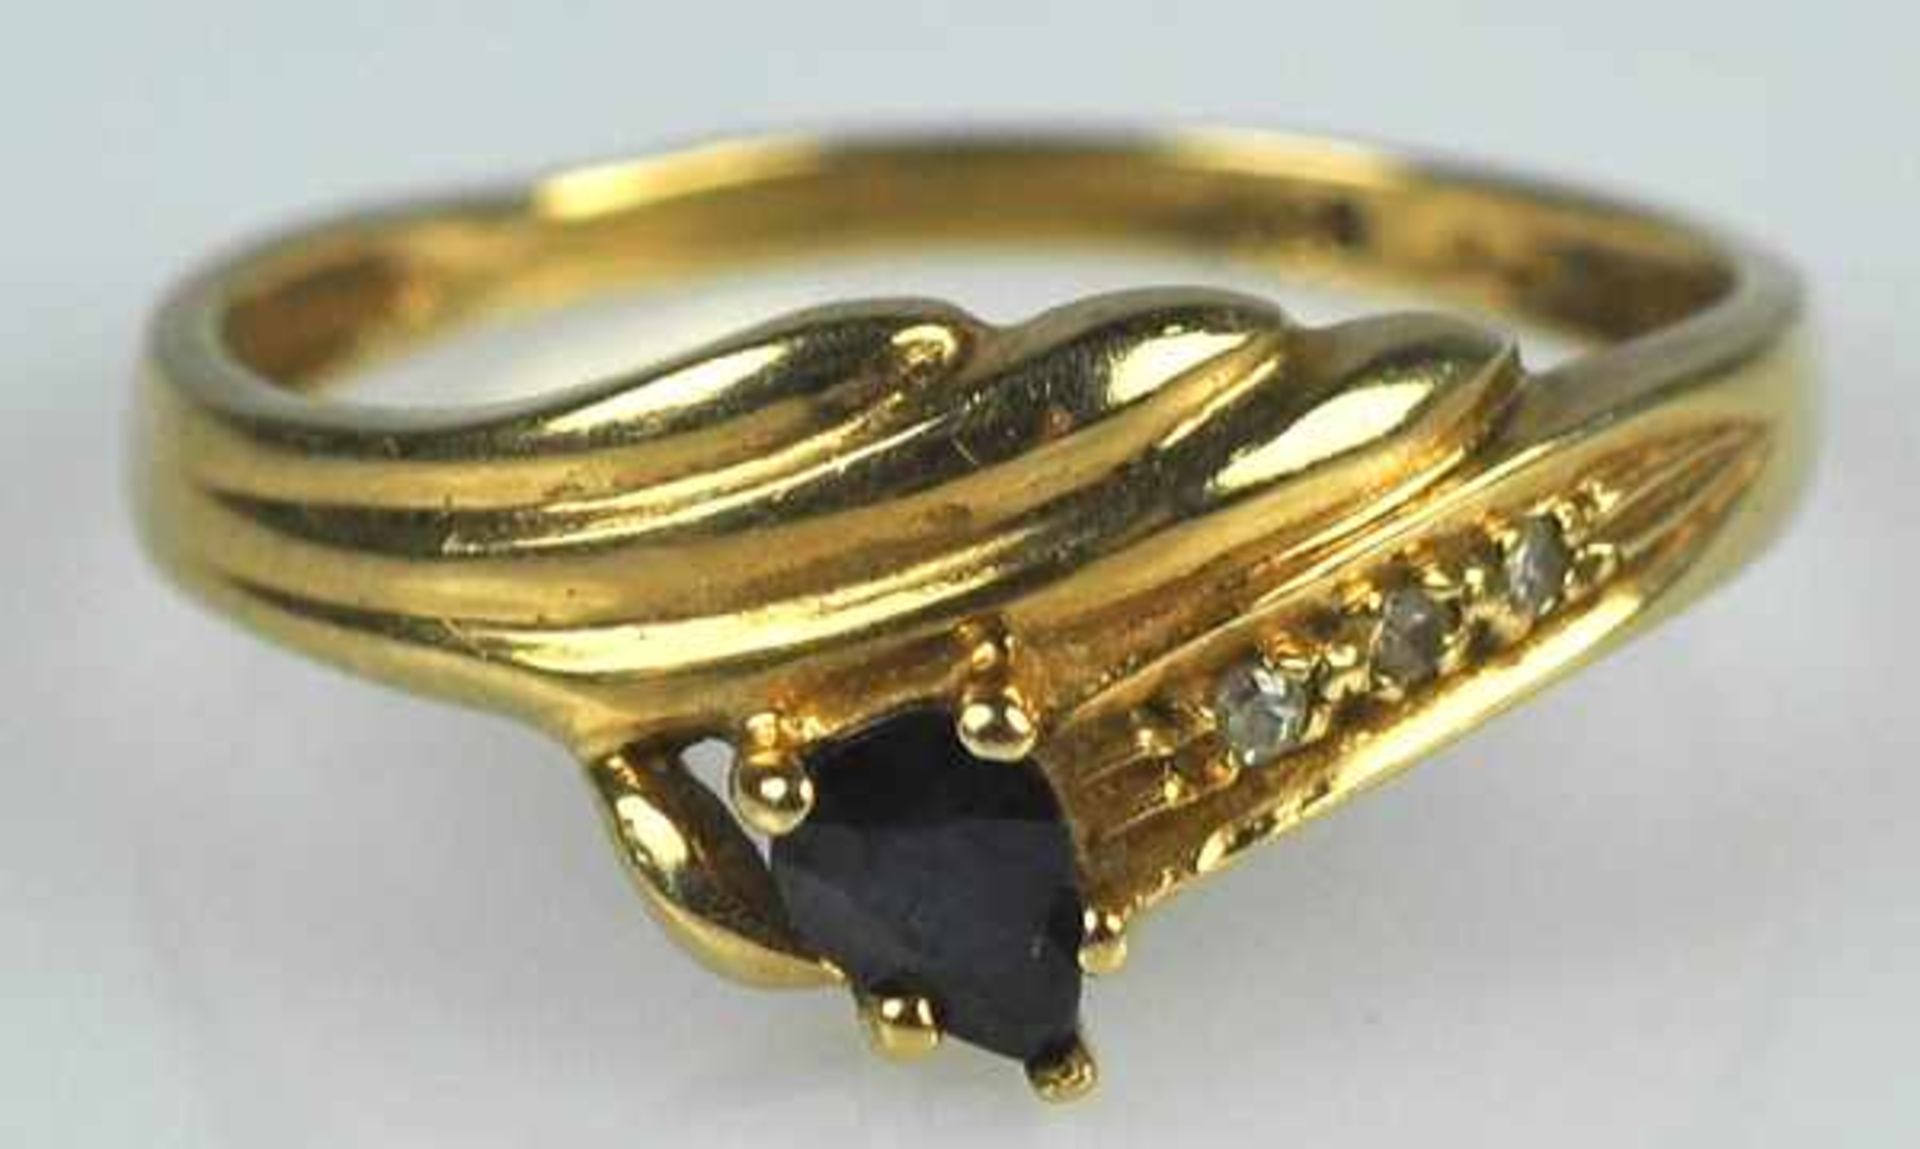 RING gerippter Dekor mit kleinem tropfenförmigem Saphir, 3 kleinen Diamanten als Besatz, Gelbgold